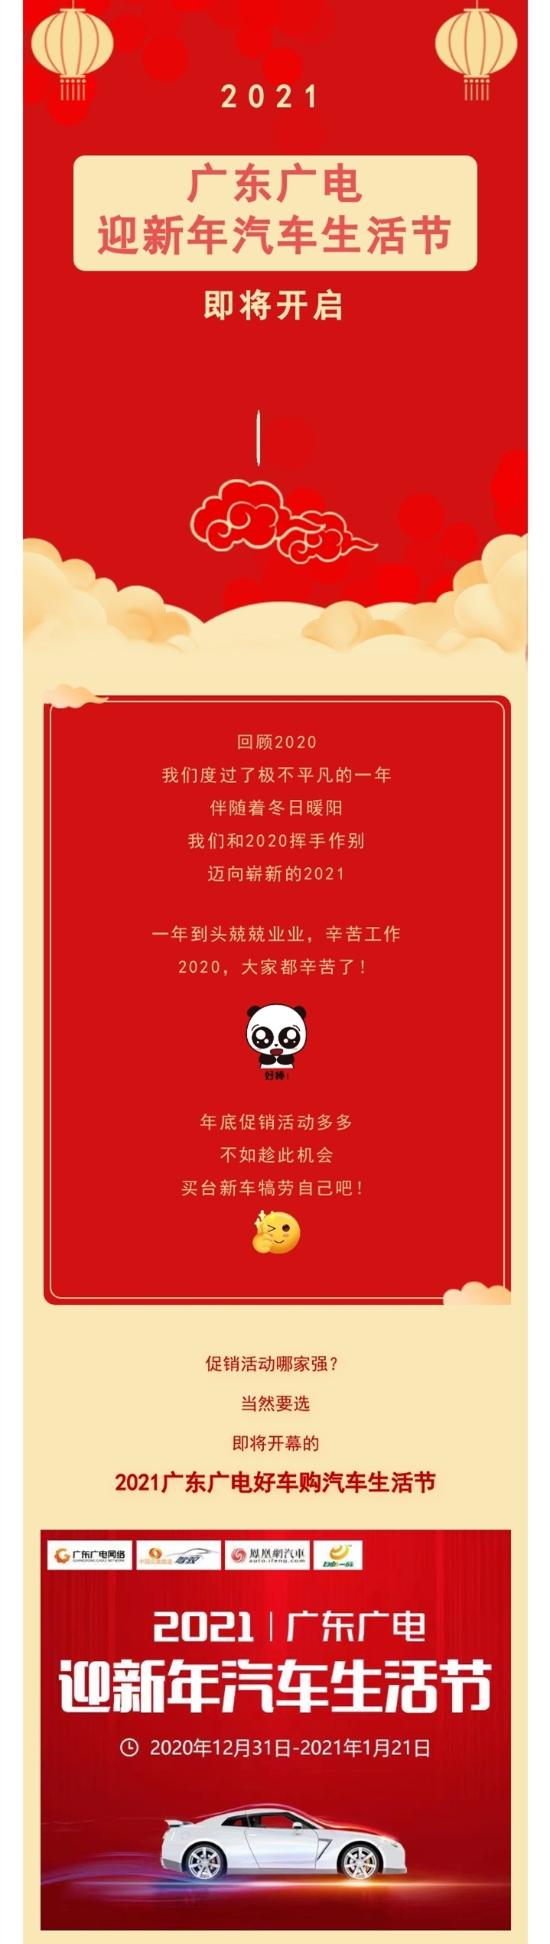 2021广东广电迎新年汽车生活节约定你       